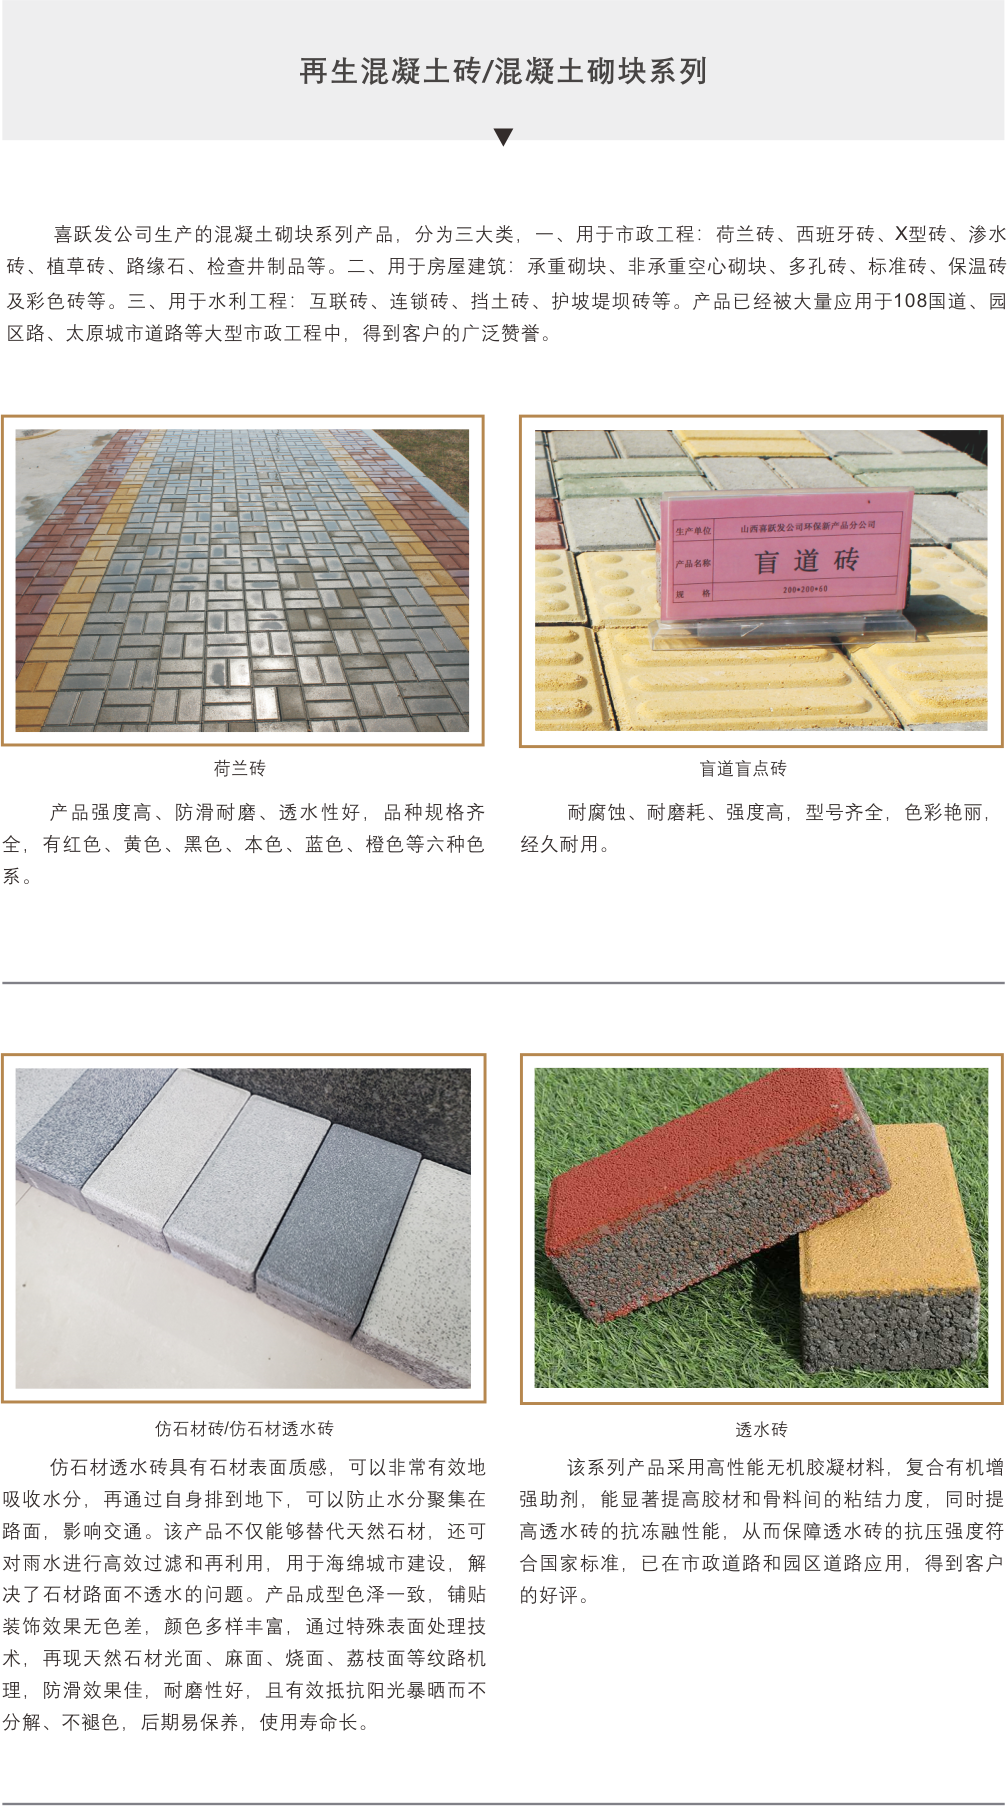 再生混凝土砖/混凝土砌块系列(图1)